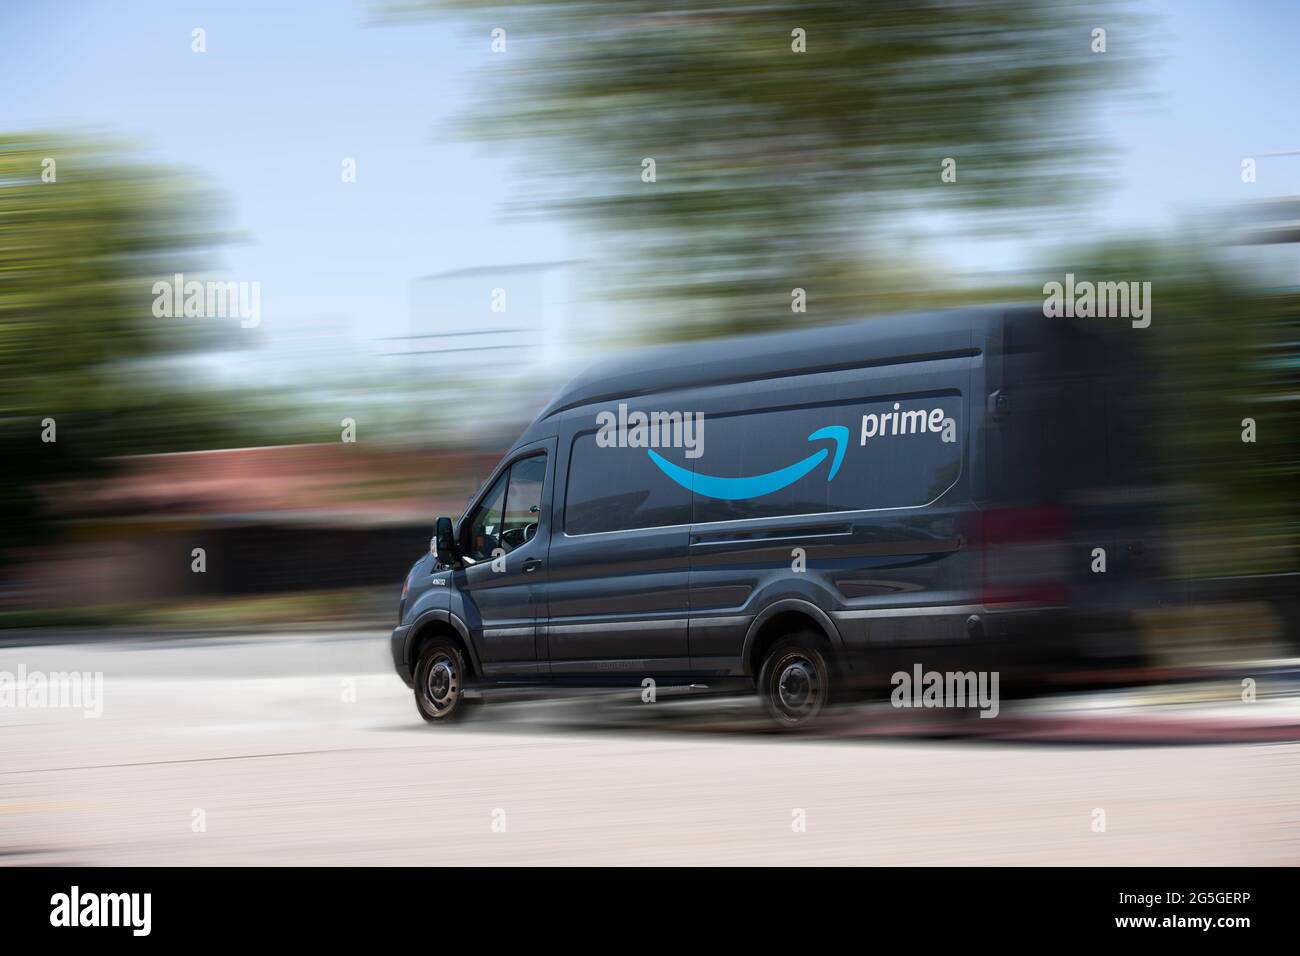 Anaheim, Californie, États-Unis -24 juin 2021 : un camion de livraison  Amazon descend dans une rue Photo Stock - Alamy